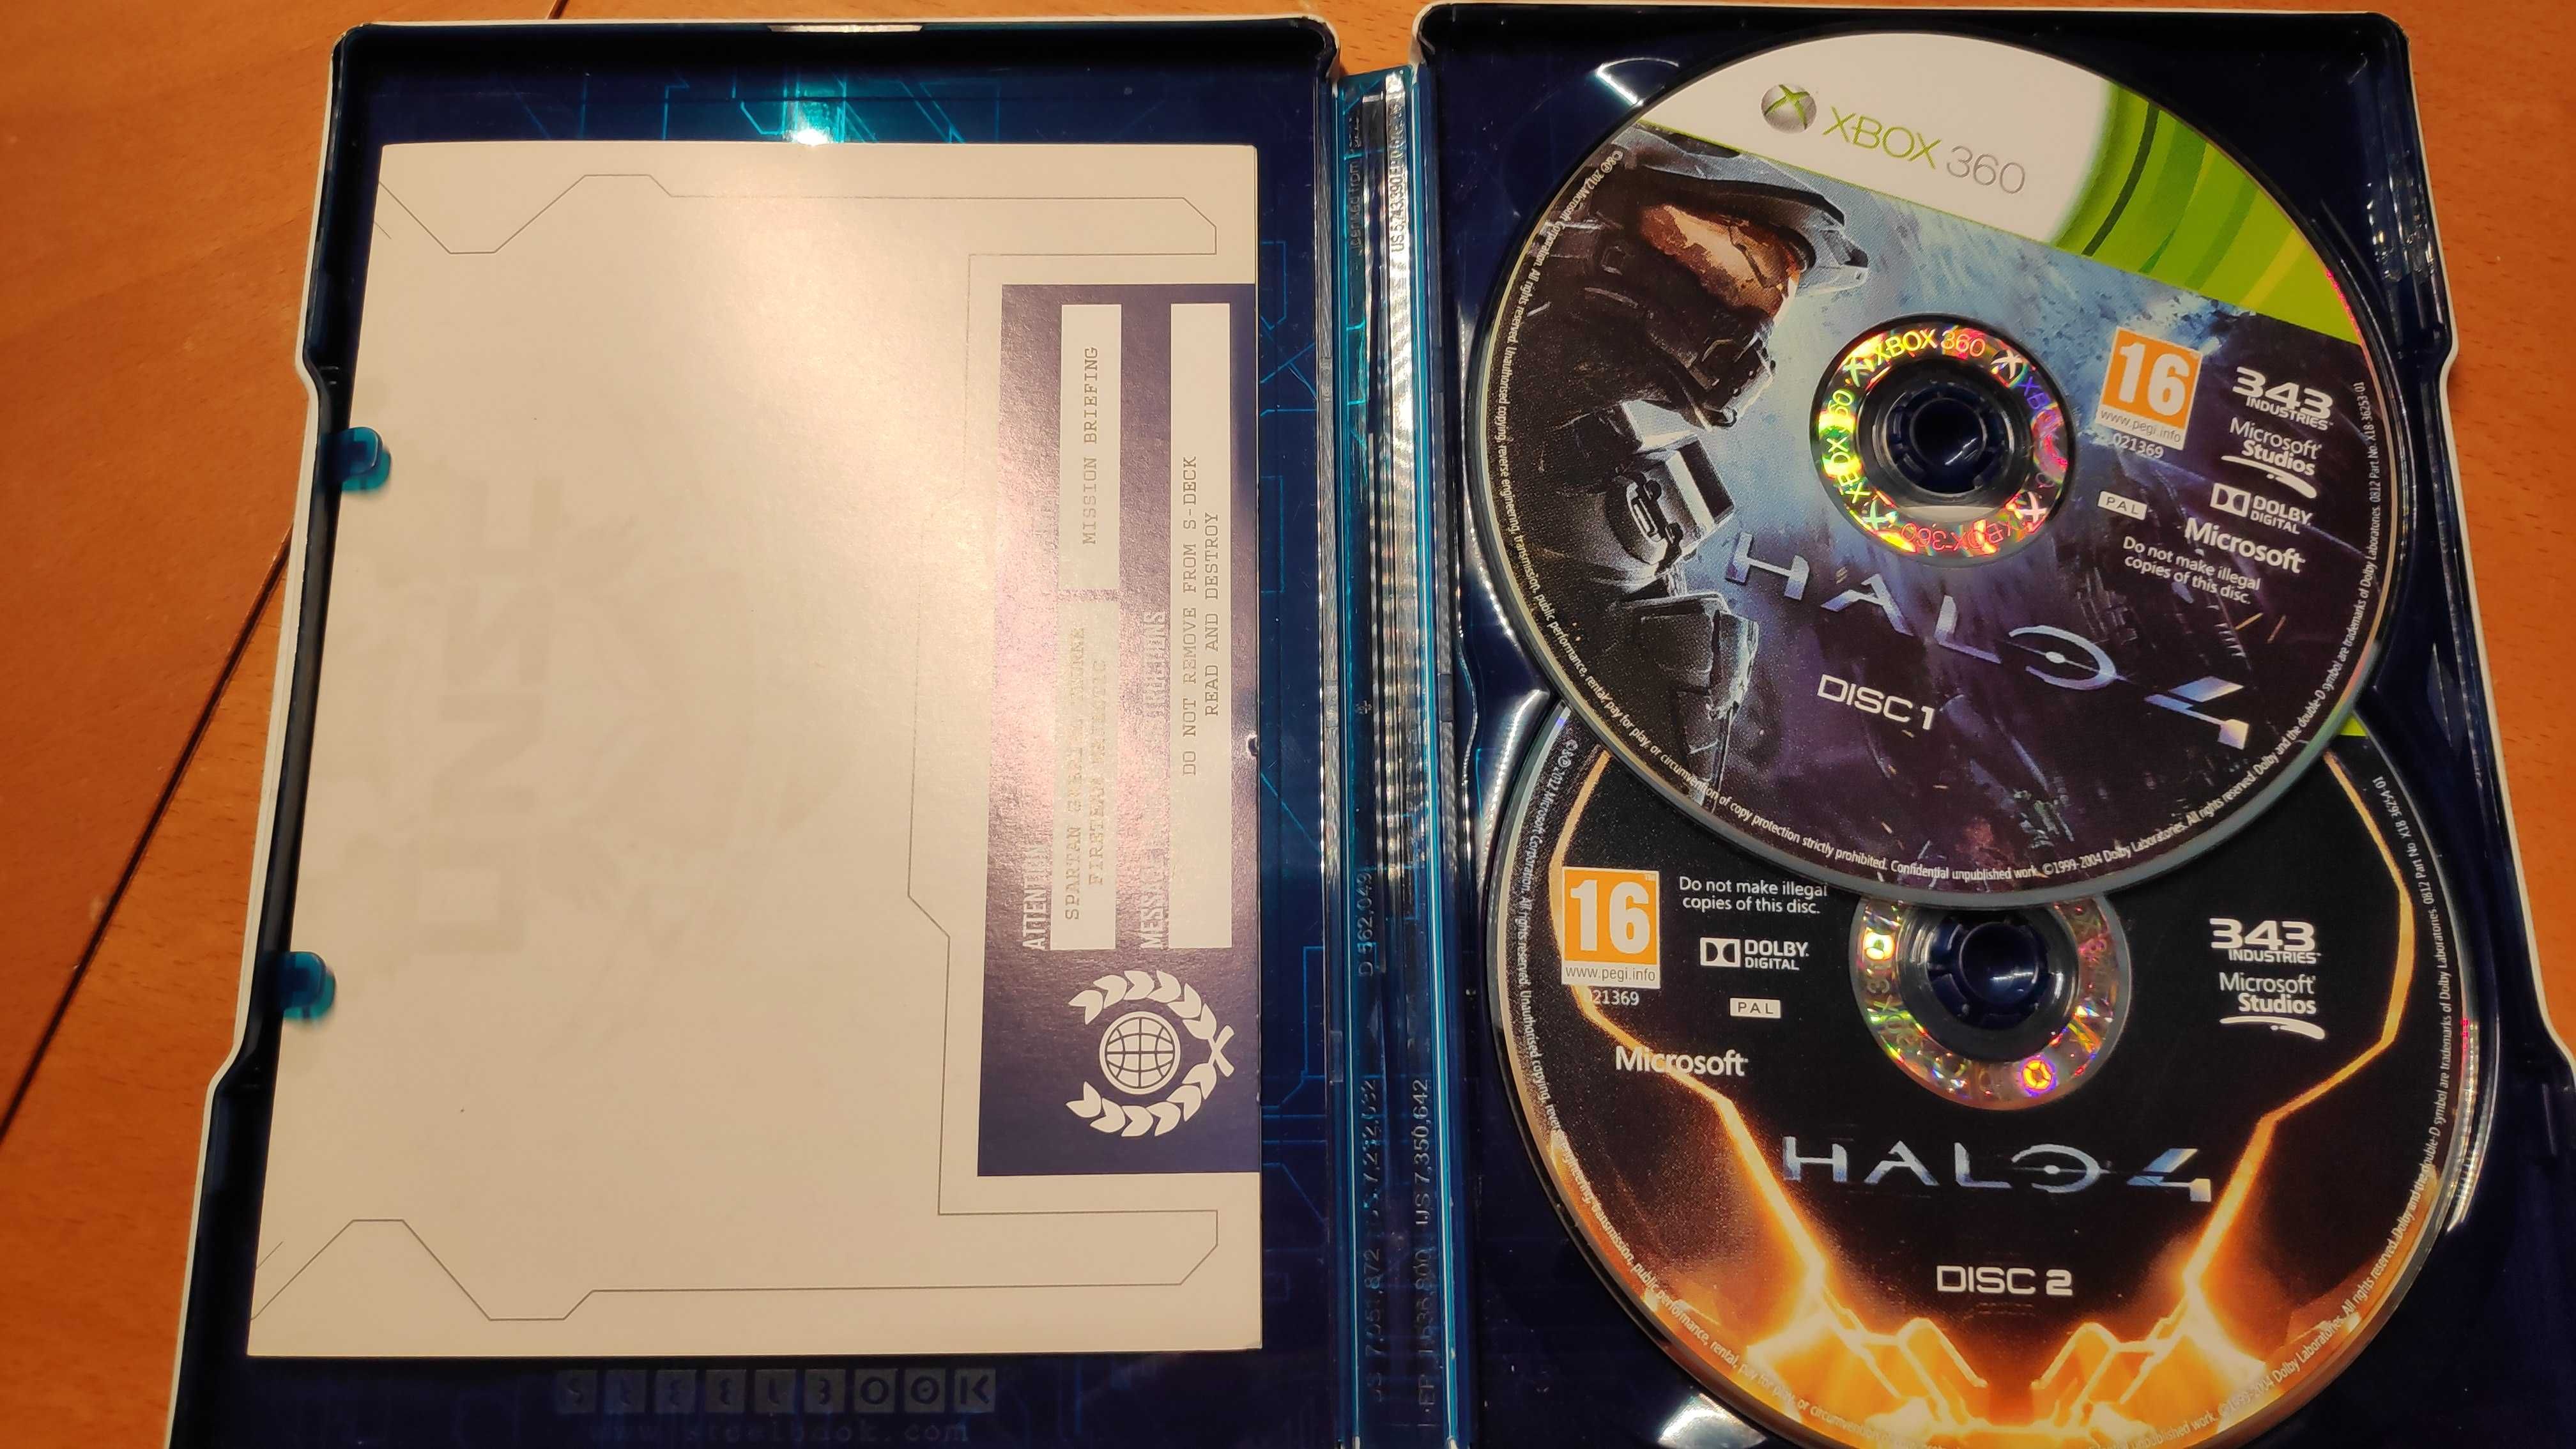 Halo 4 (Xbox 360) + Steelbook